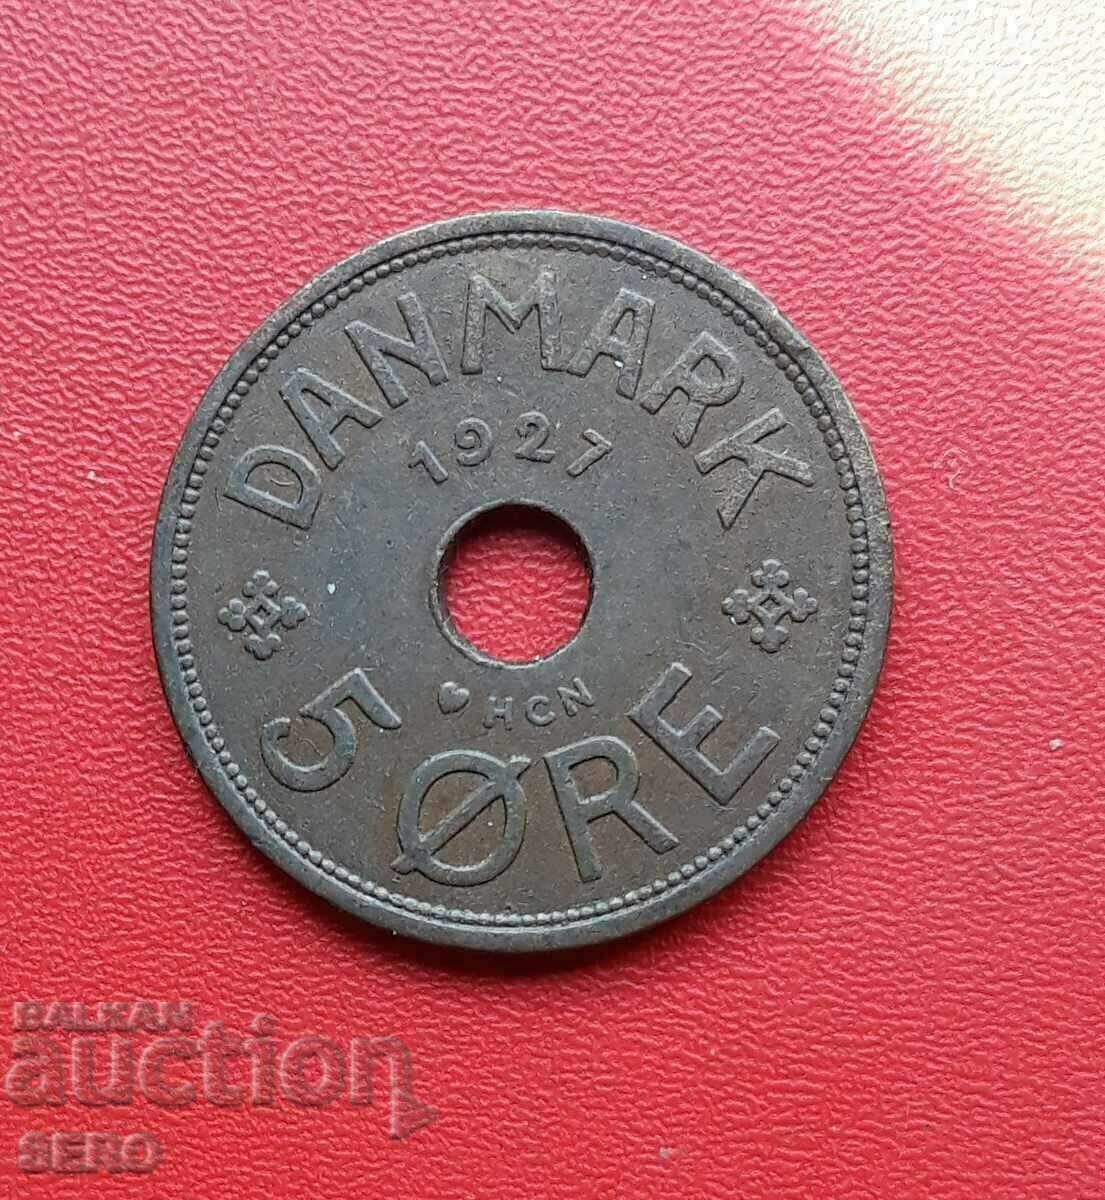 Danemarca-5 iori 1927-pl. frumos conservat